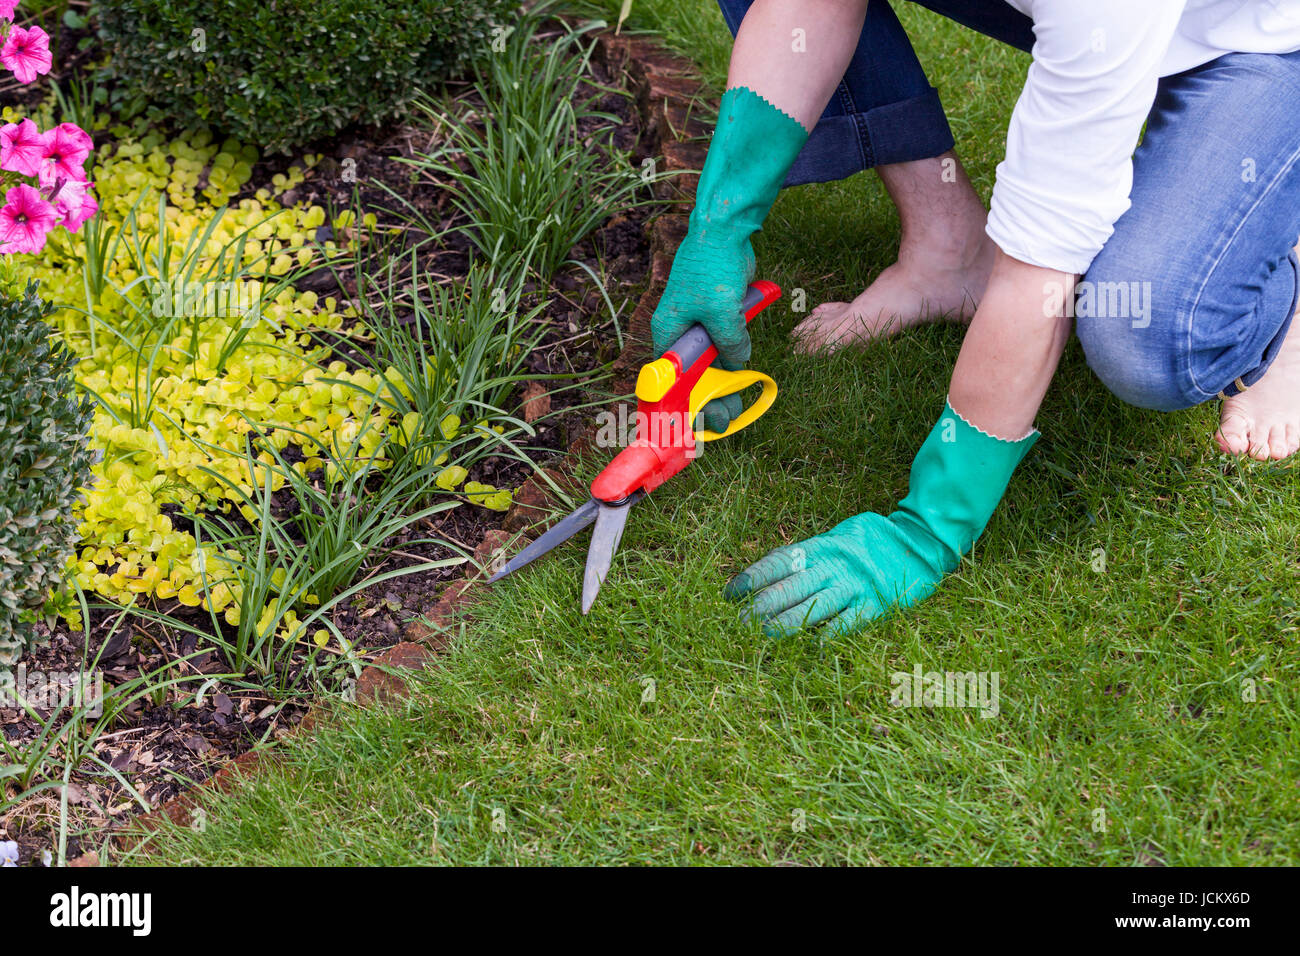 Hände mit Handschuhen bei der Gartenschere und Gartenarbeit im Sommer im Freien Banque D'Images